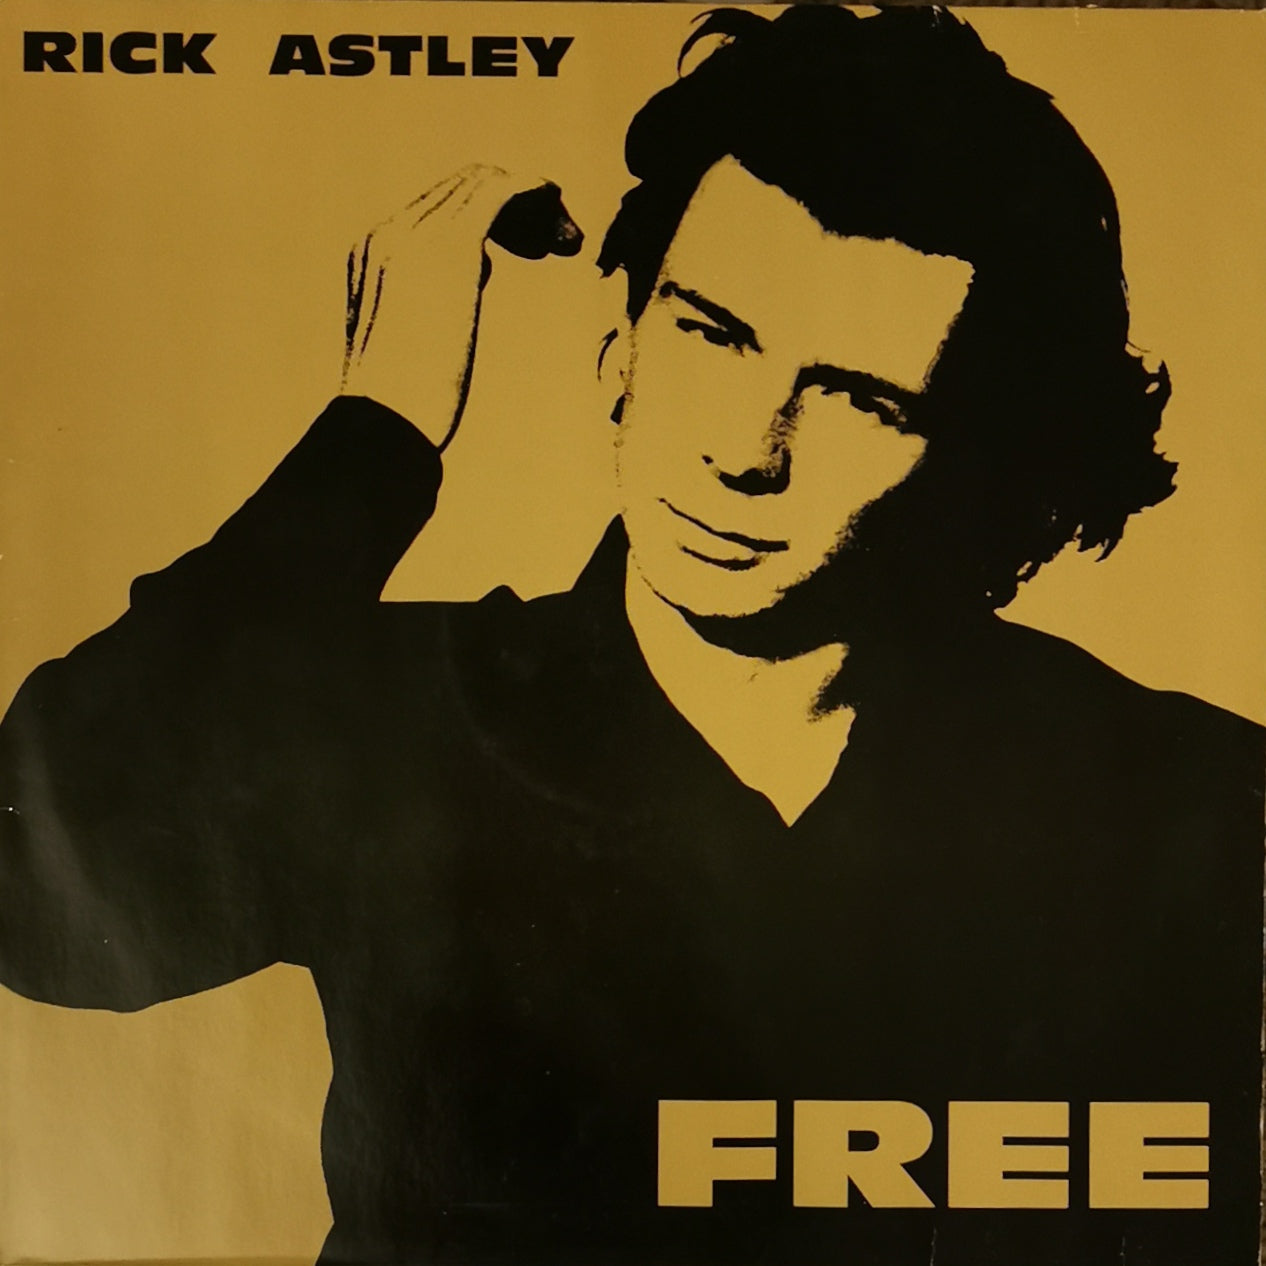 RICK ASTLEY - Free